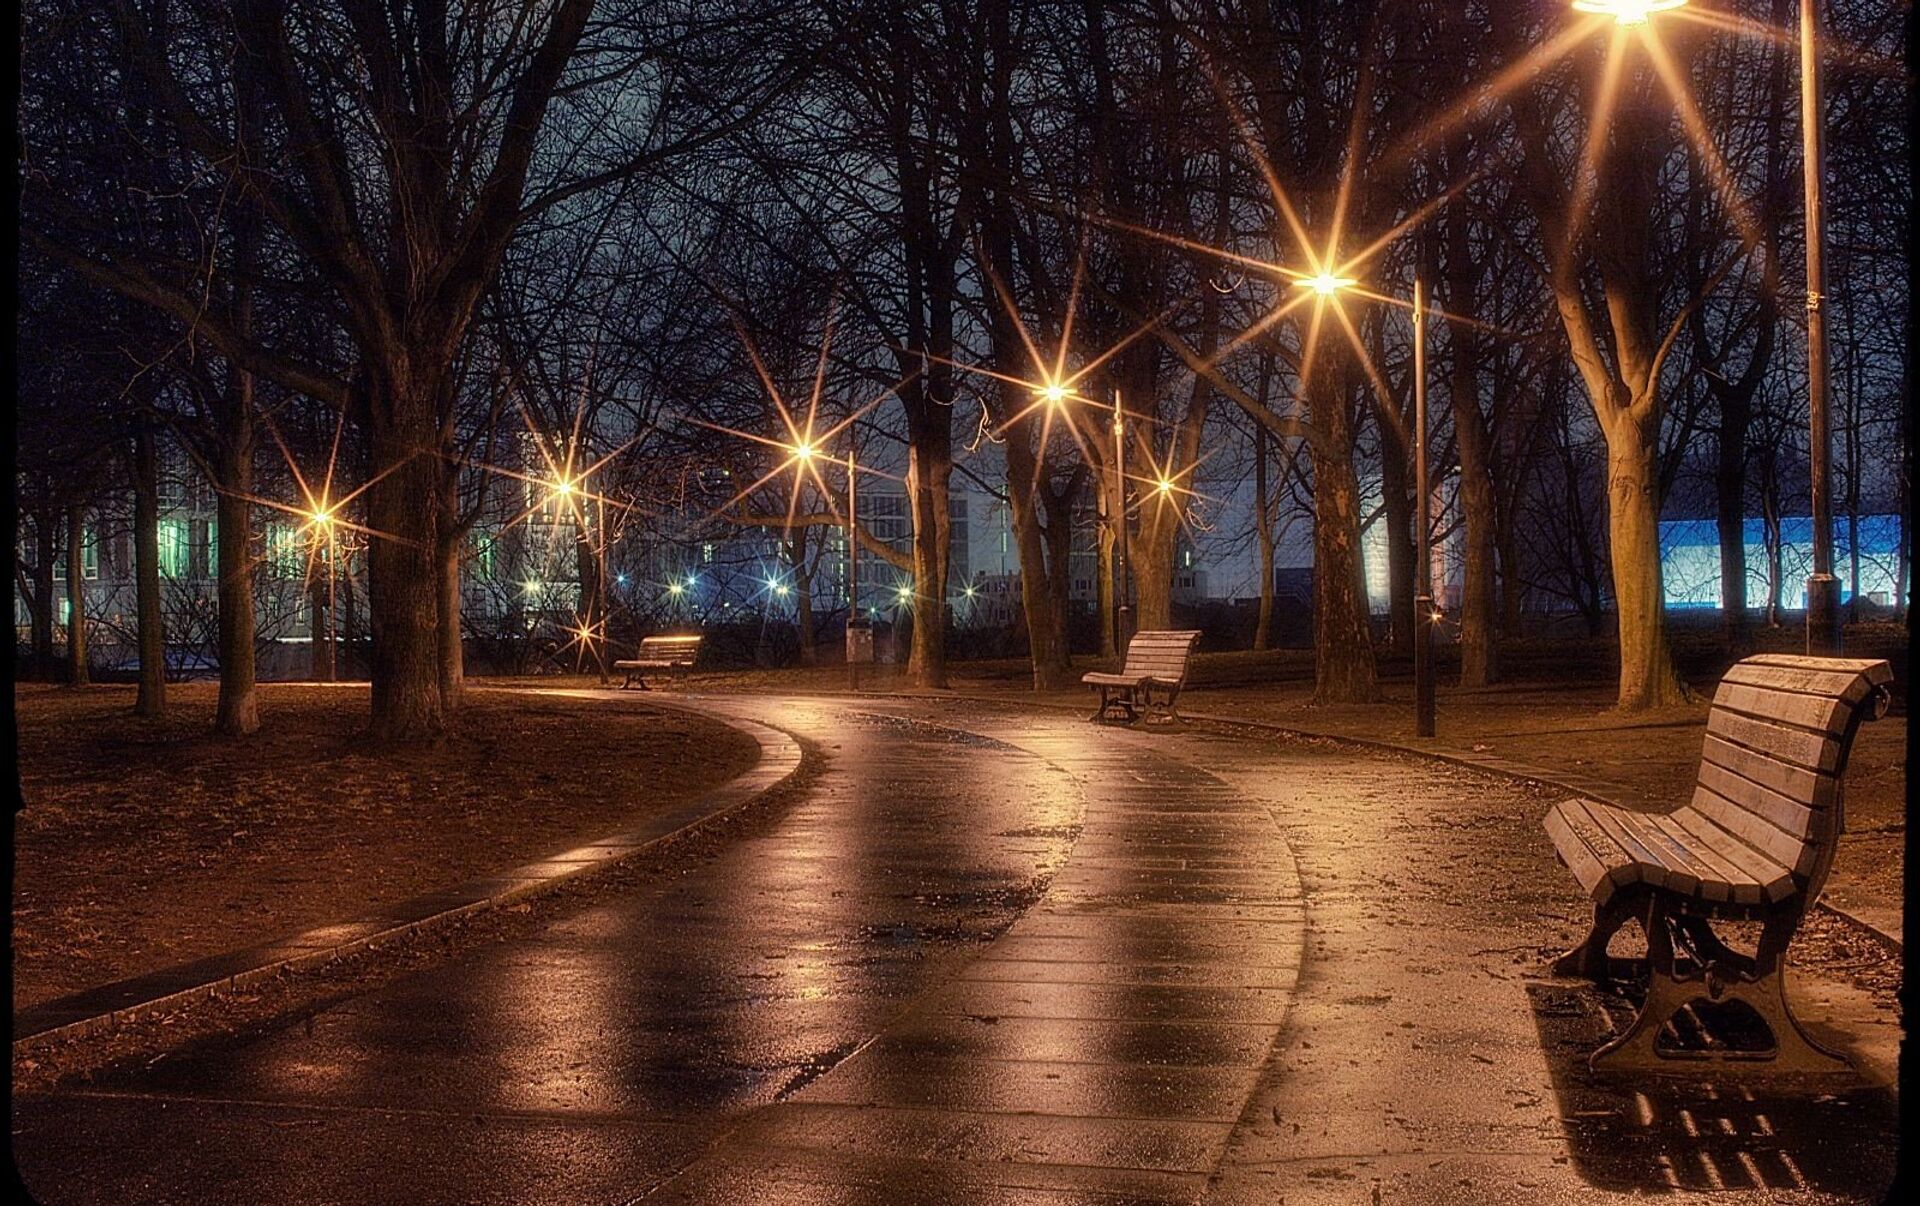 00 00 ночи или вечера. Ночной парк. Вечерняя улица с фонарями. Аллея с фонарями. Вечерний парк.